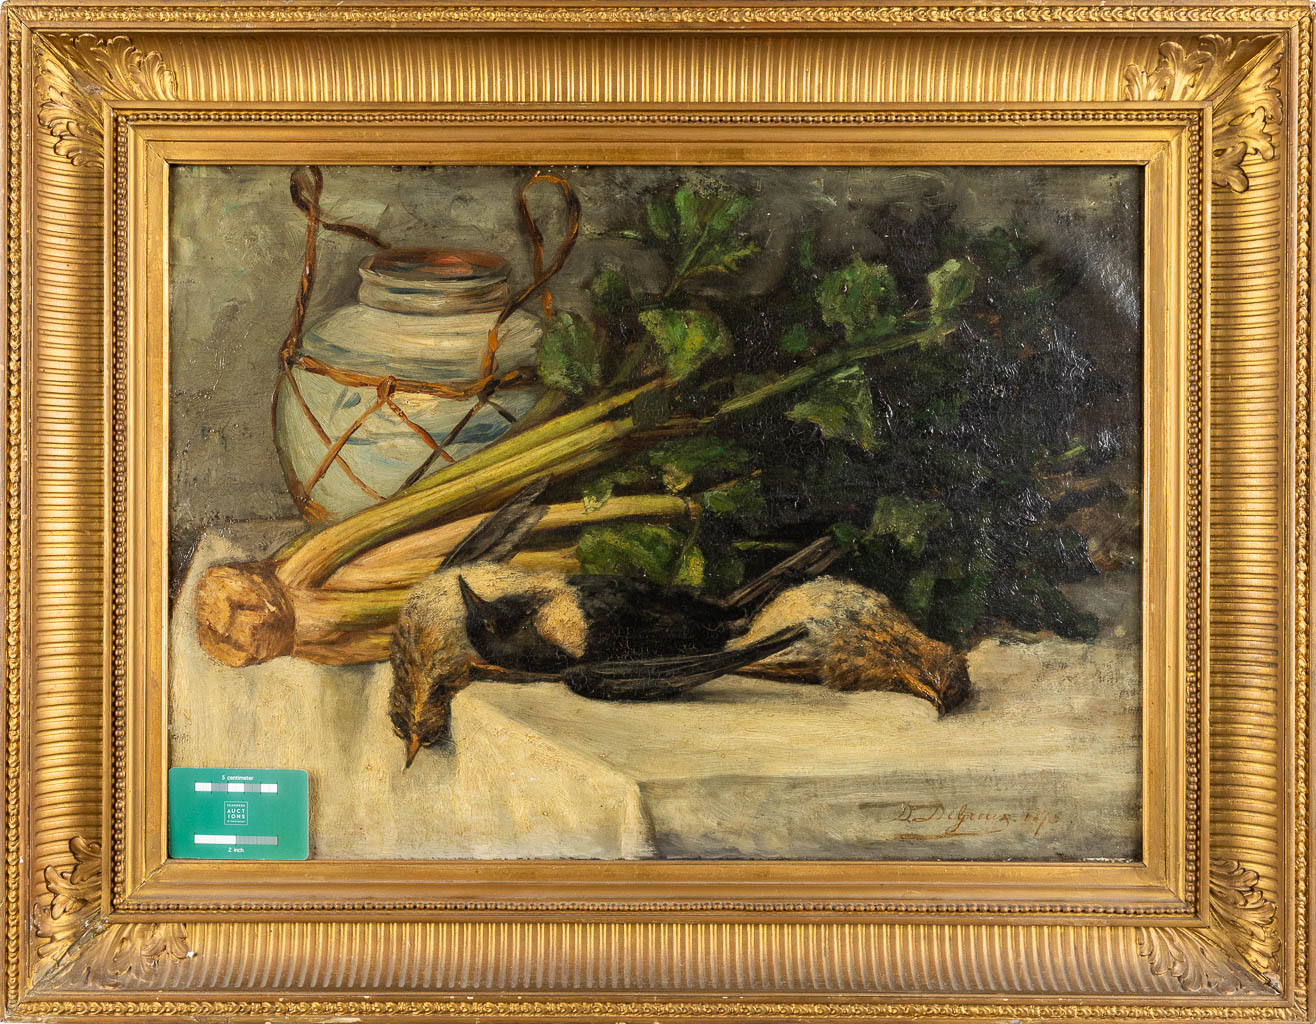 DE GROUX D. (XIX) 'A Still Life' oil on canvas. 1875. (W:60 x H:44 cm) - Image 2 of 7